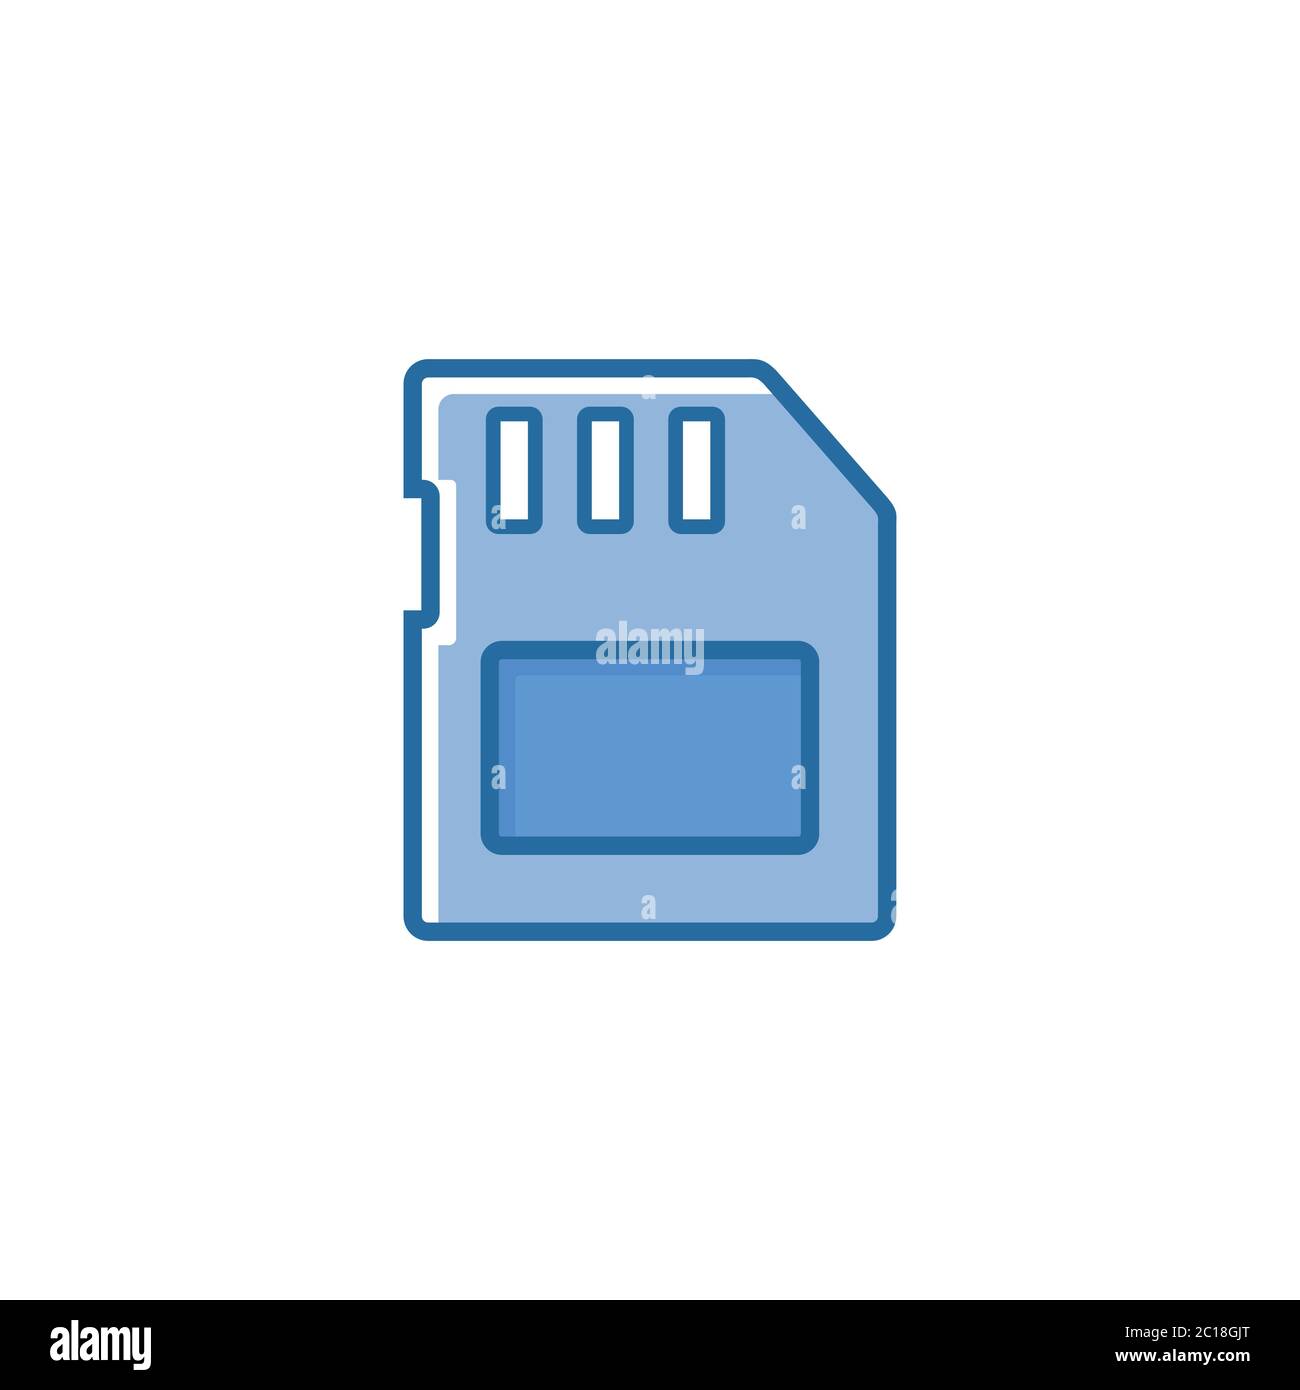 Icona della scheda micro sd piatta minimalista. Adatto per elementi di progettazione della tecnologia dei dispositivi di stoccaggio. Illustrazione Vettoriale